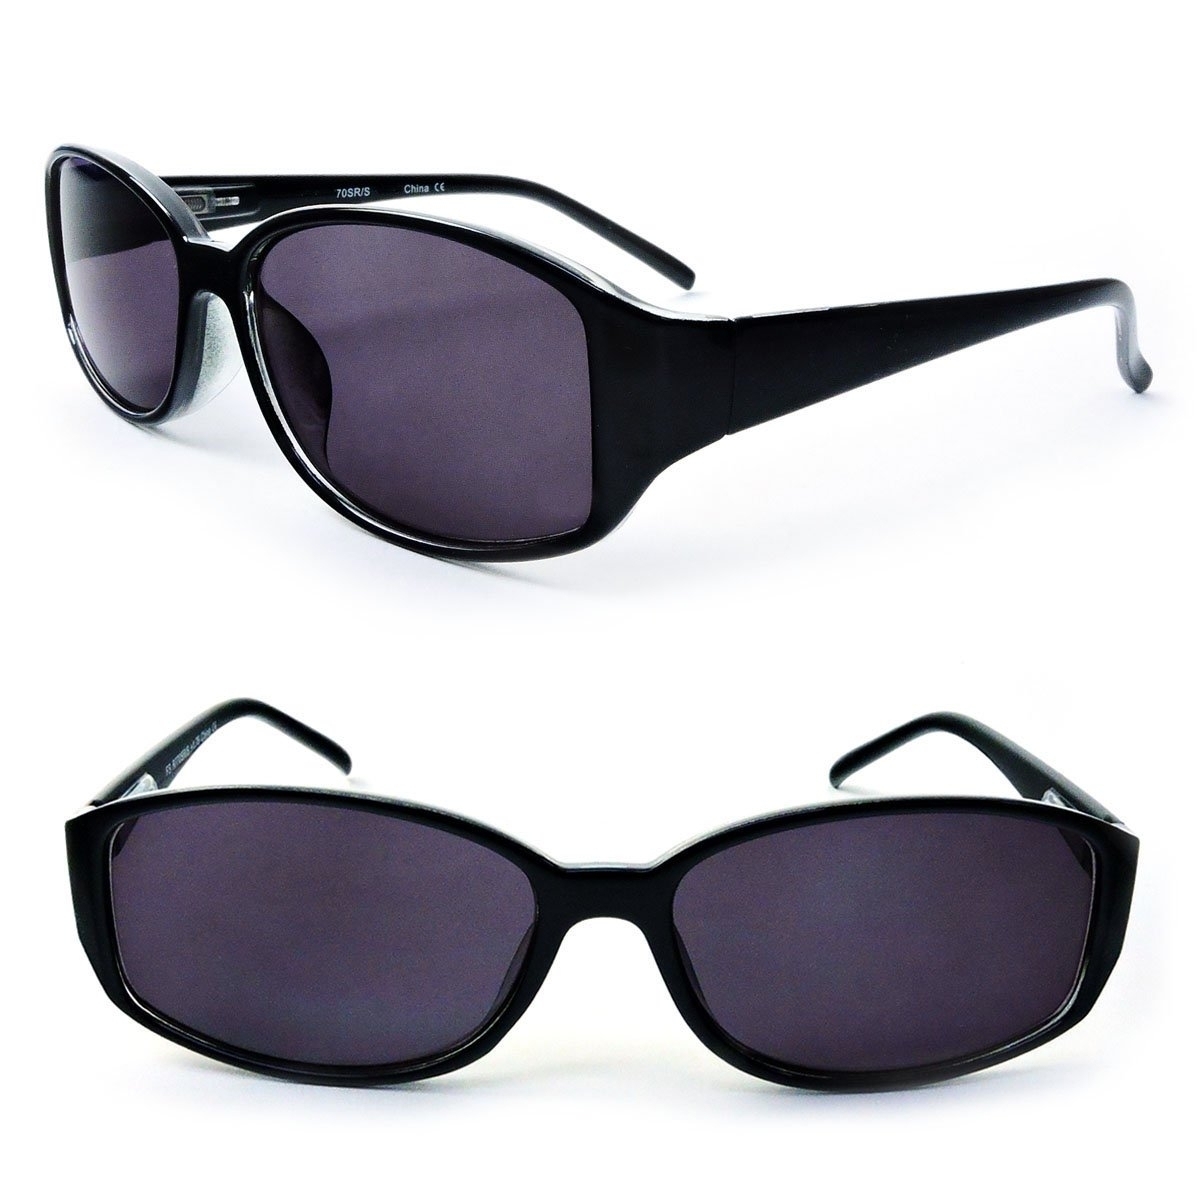 Classic Sun Readers Full Lens Spring Hinges Reading Sunglasses For Women - Black, +3.00